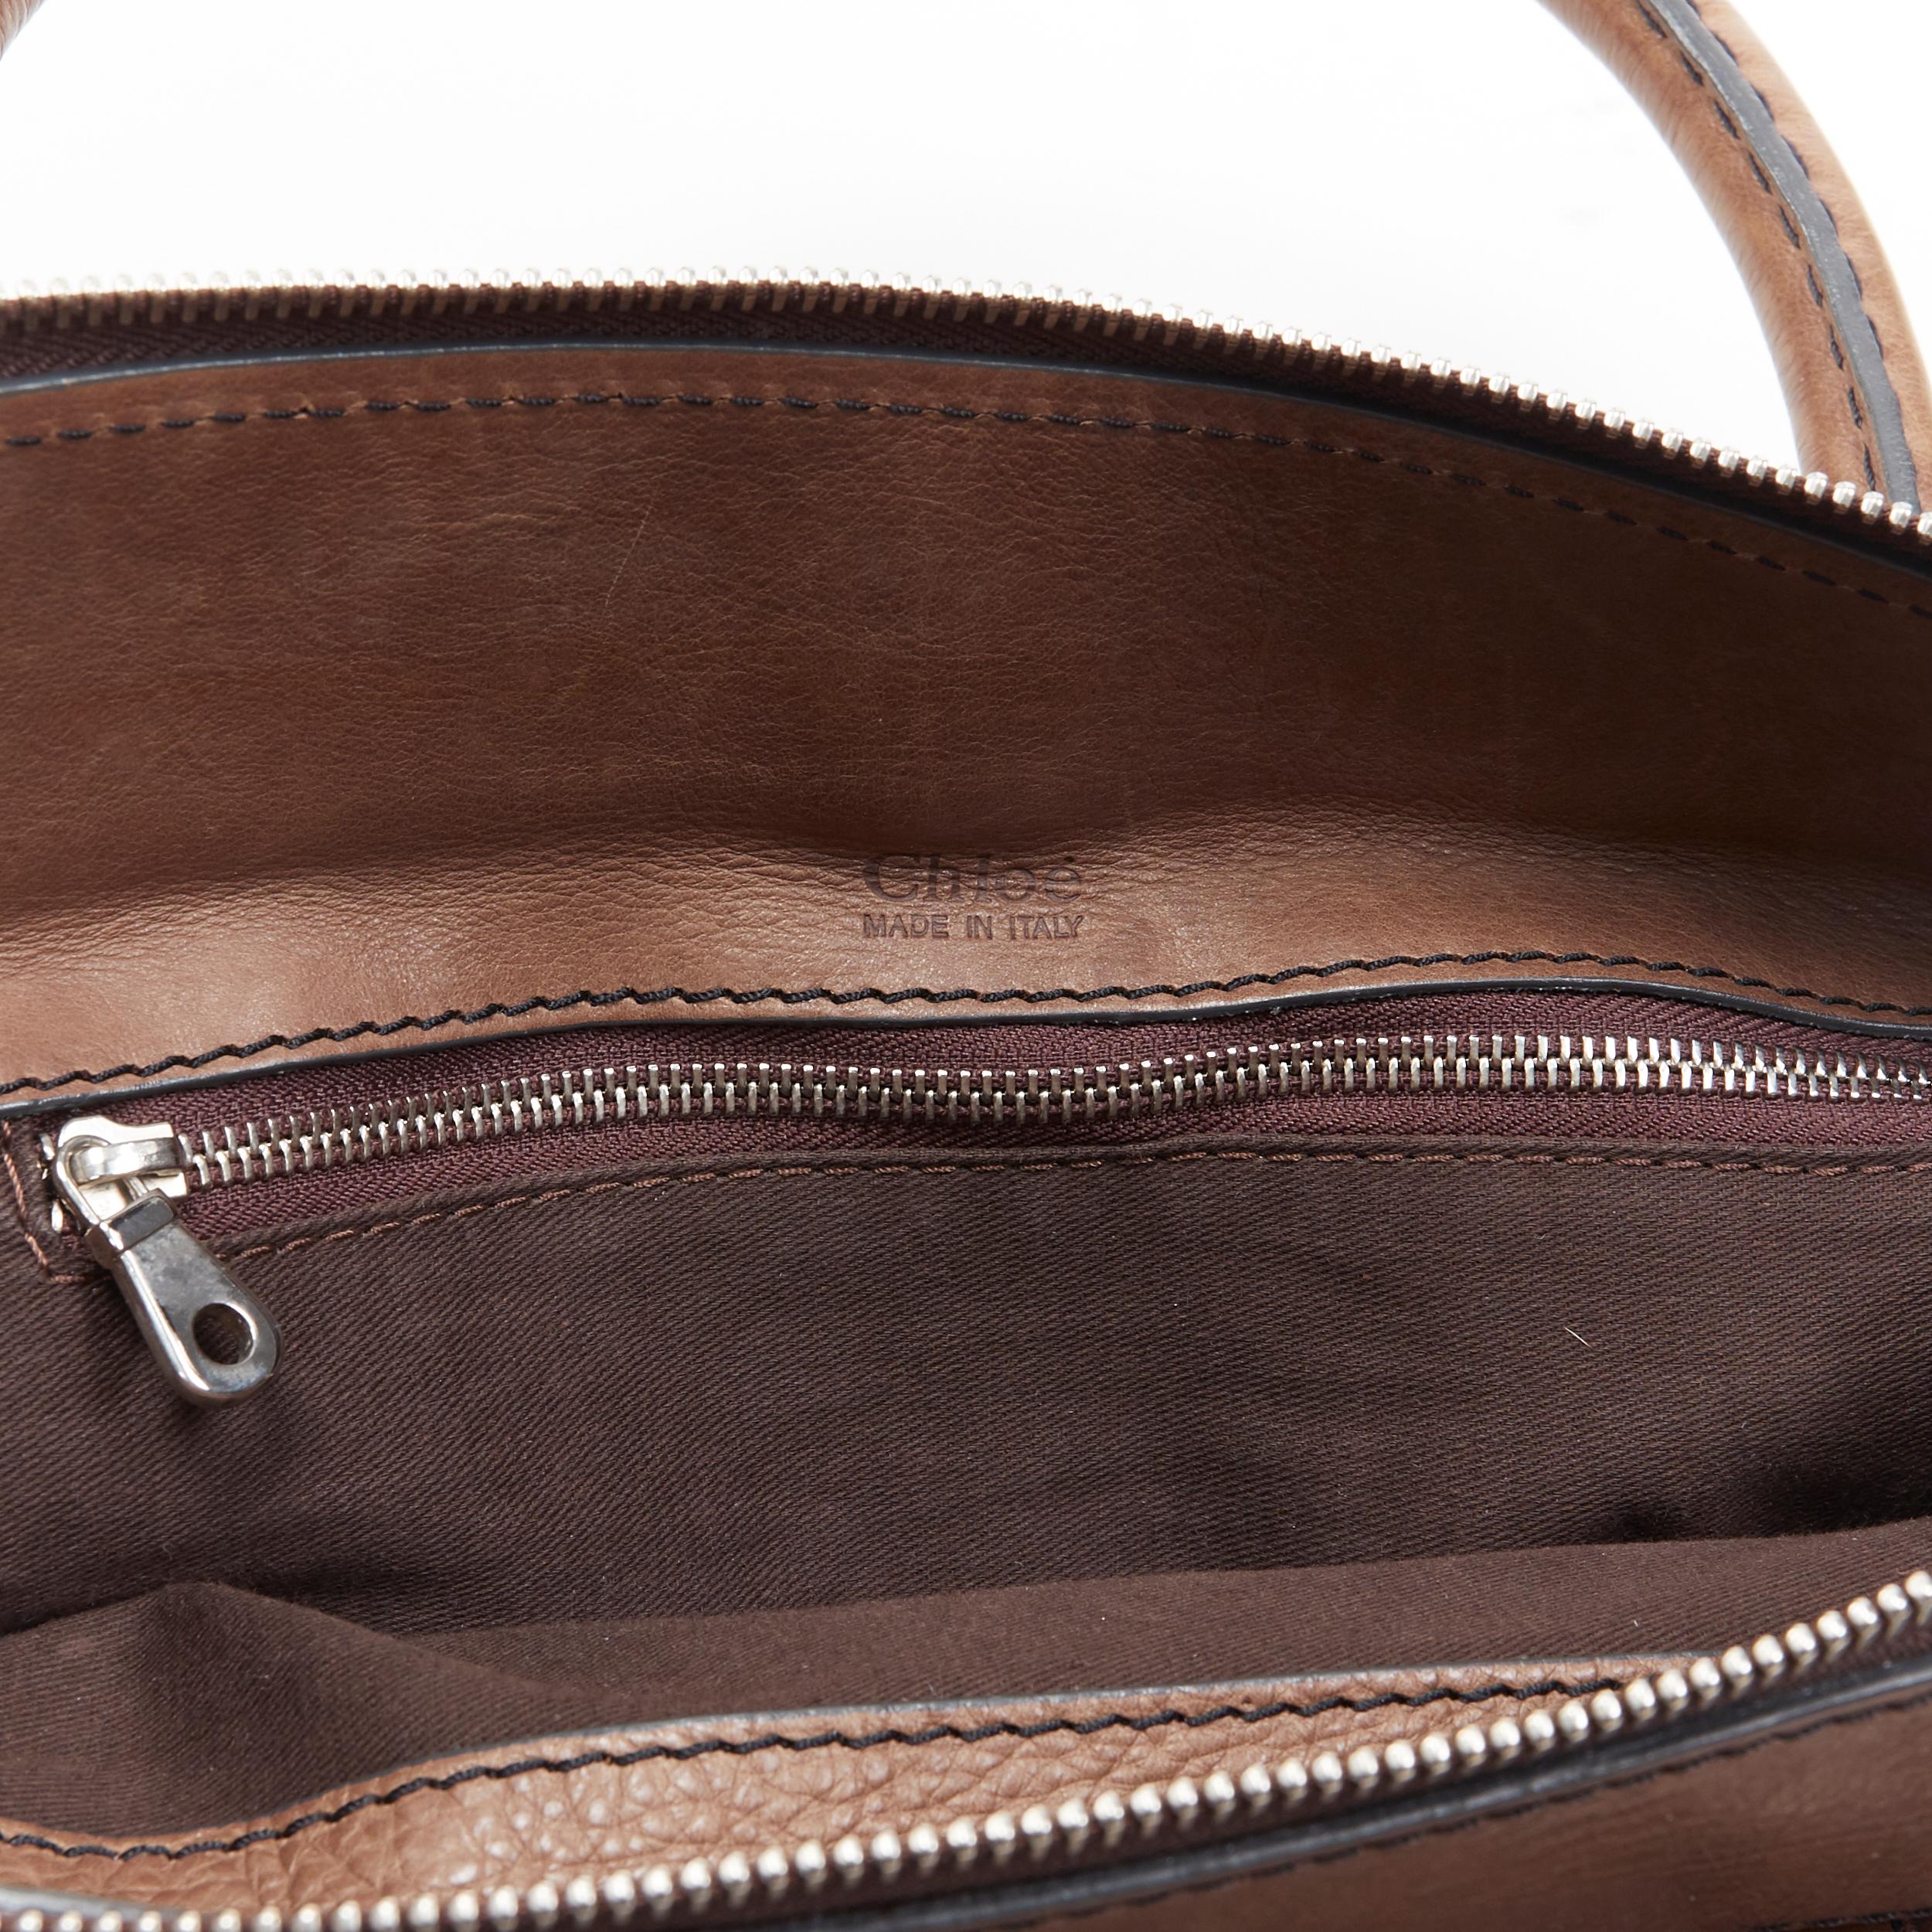 CHLOE Edith dark brown leather buckle pocket top handle large tote bag 2